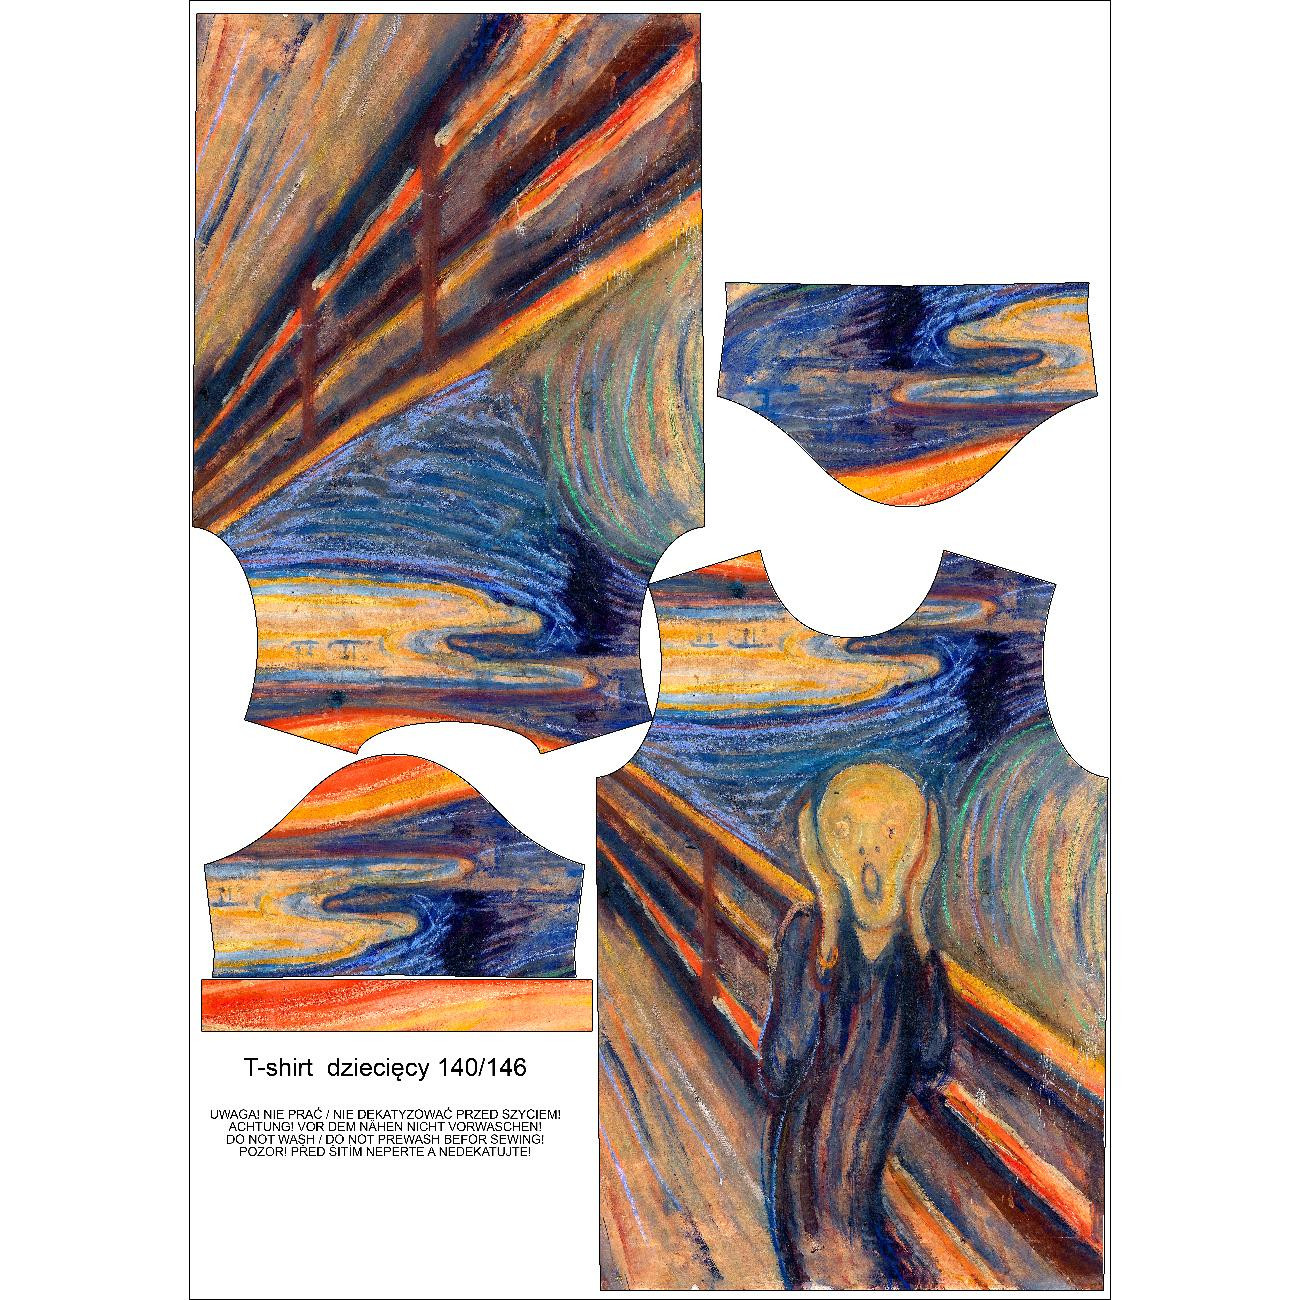 T-SHIRT DZIECIĘCY - KRZYK (Edvard Munch) - zestaw do uszycia